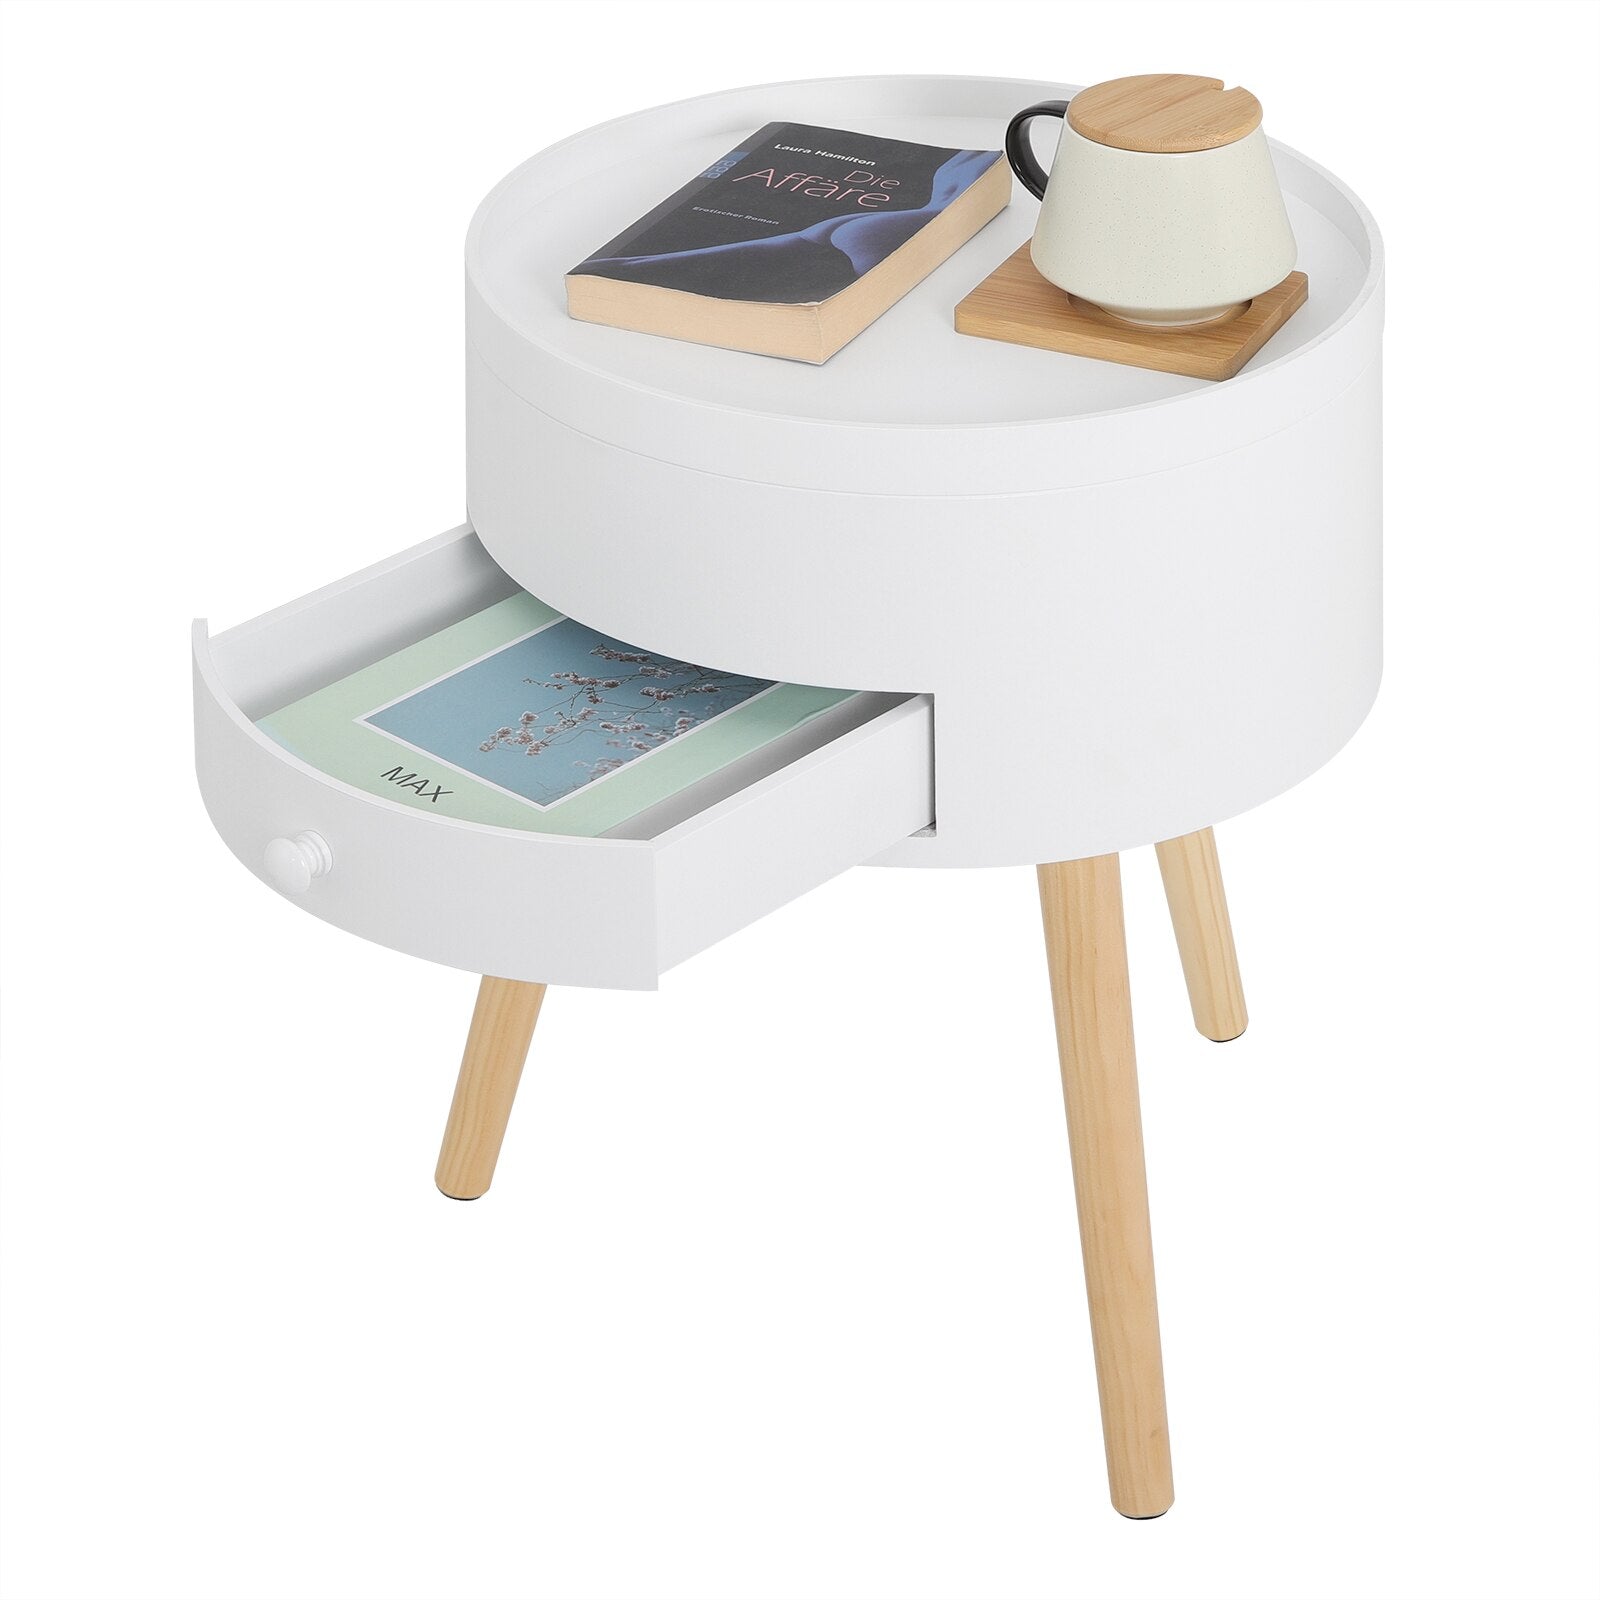 Weiße Nachttisch-Kommode mit Schublade: Runder Holz Beistelltisch mit modernem Design für Wohnzimmer und Schlafzimmer - Unique Outlet